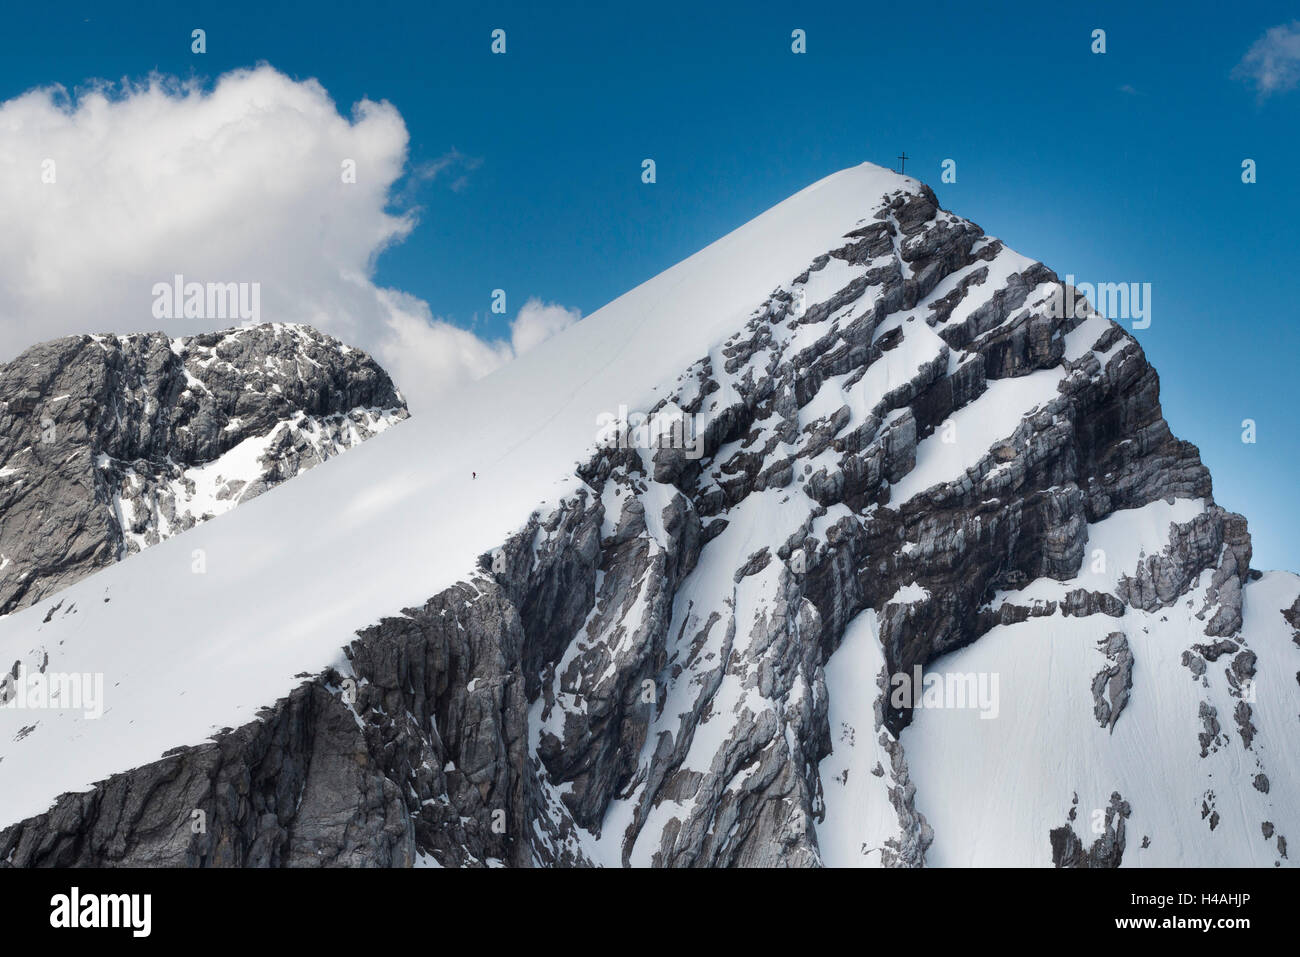 Alpspitze, Freeriding, aerial picture, winter, Germany, Bavaria, Upper Bavaria, Bavarian Alps, Werdenfelser Land, Garmisch-Partenkirchen Stock Photo